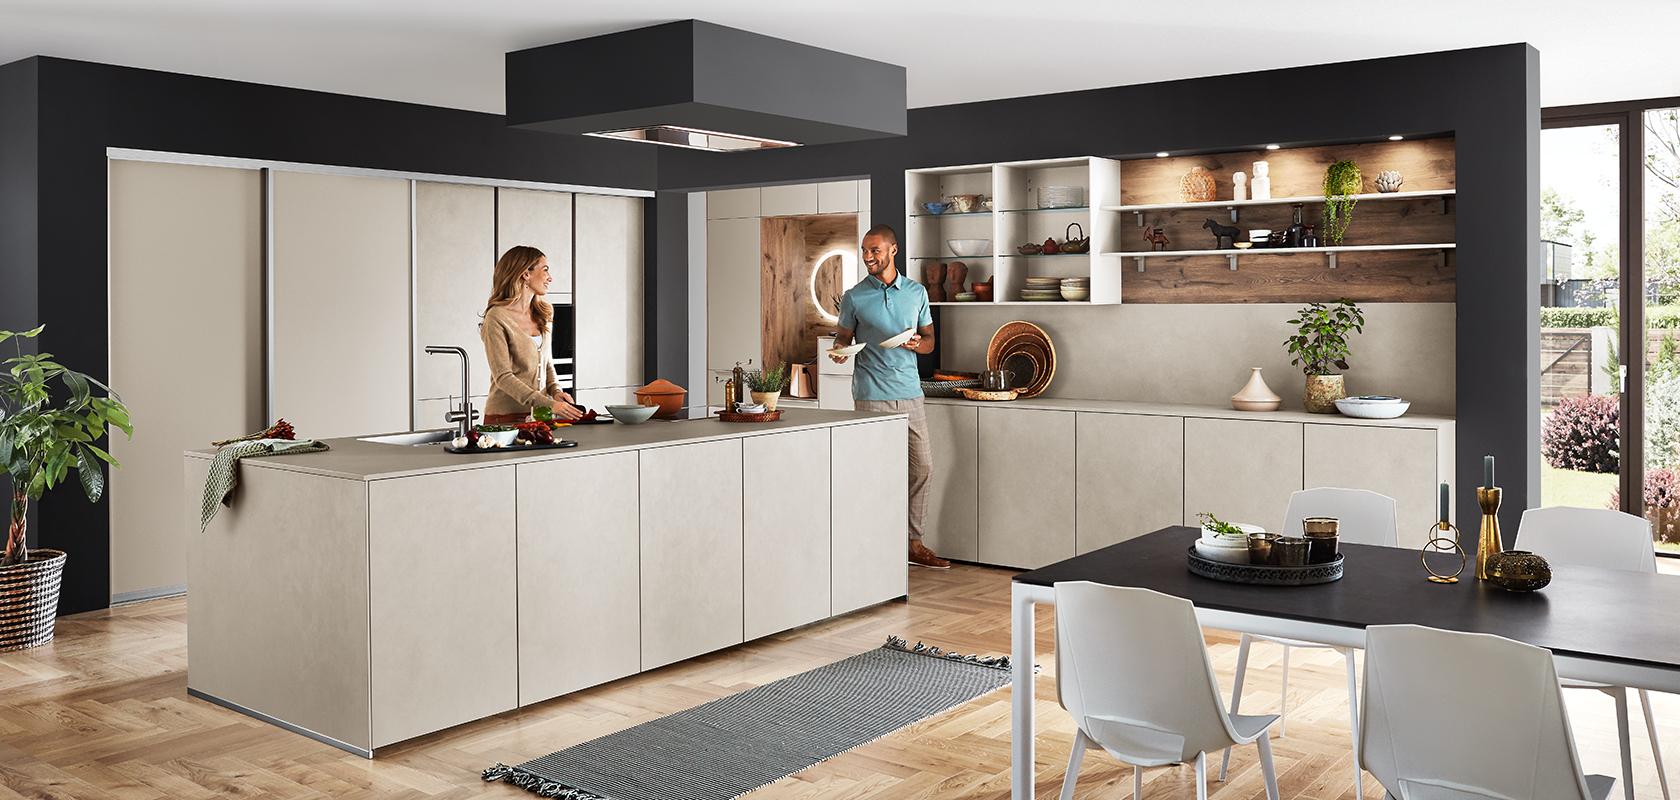 Elegante design di cucina moderna con un'isola centrale, mensole aperte e elettrodomestici integrati, con una coppia che si gode una conversazione sul piano di lavoro.